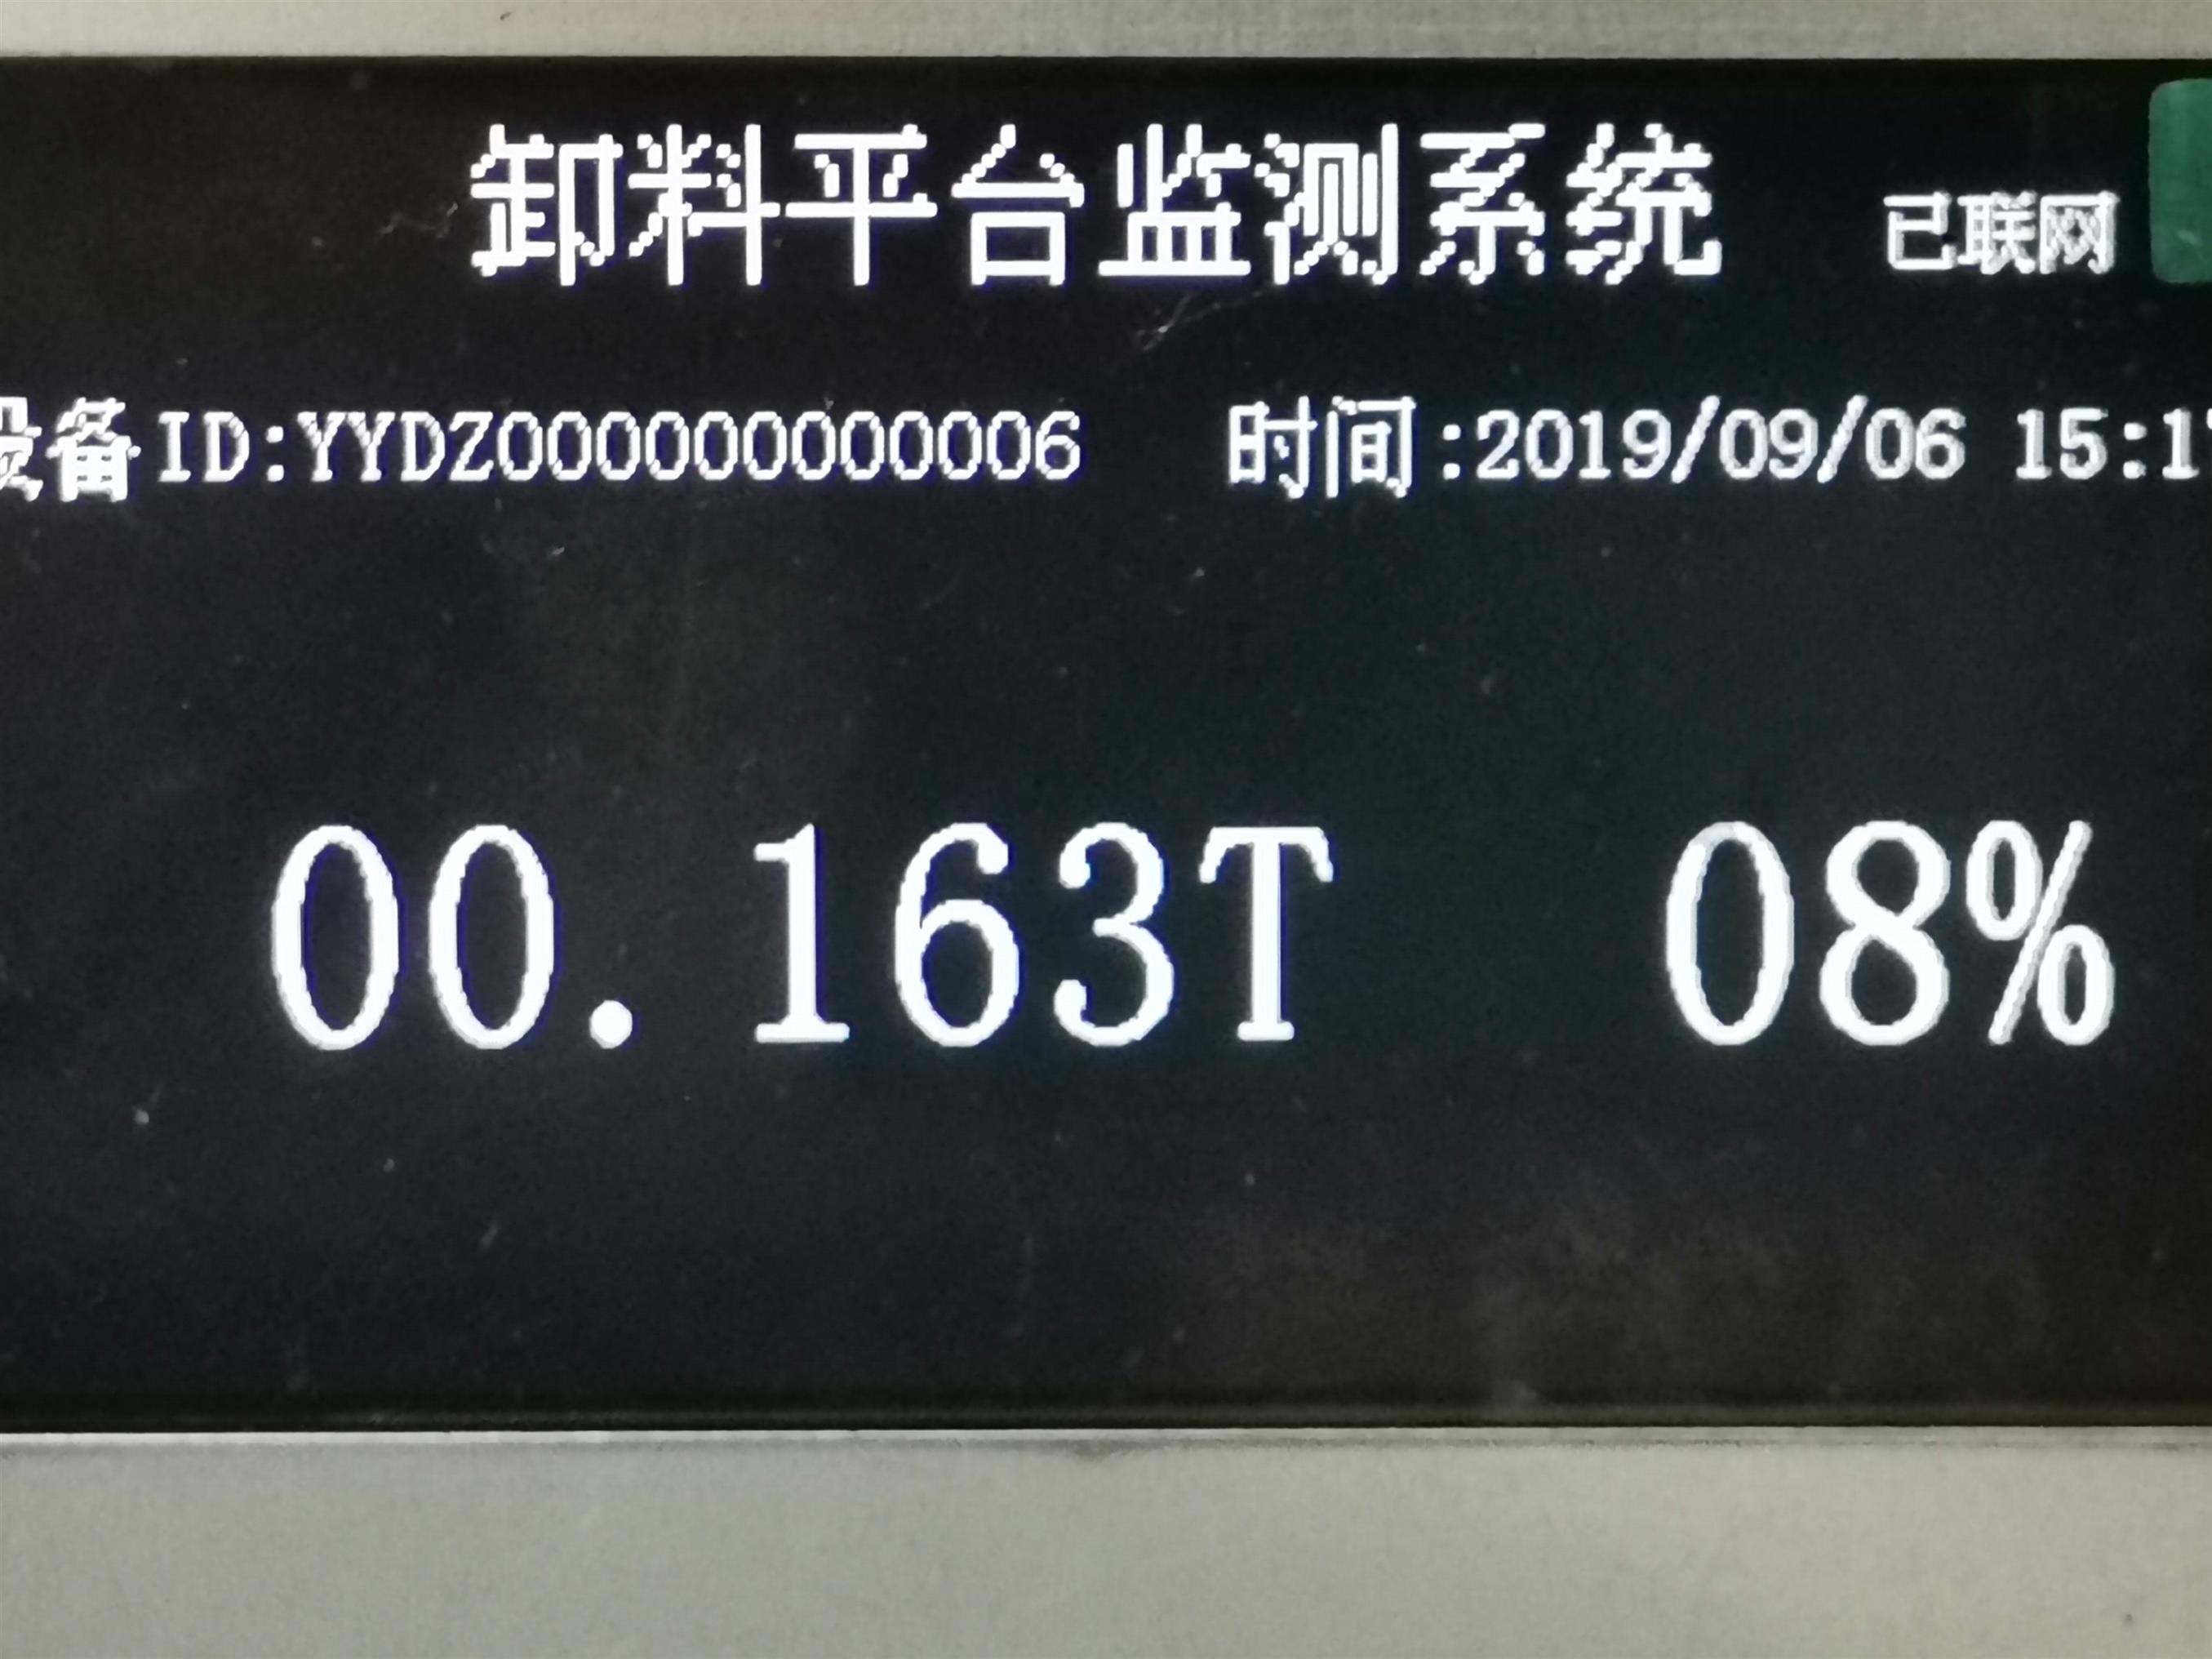 上海大运电子科技 南京卸料平台安全监控系统批发厂家